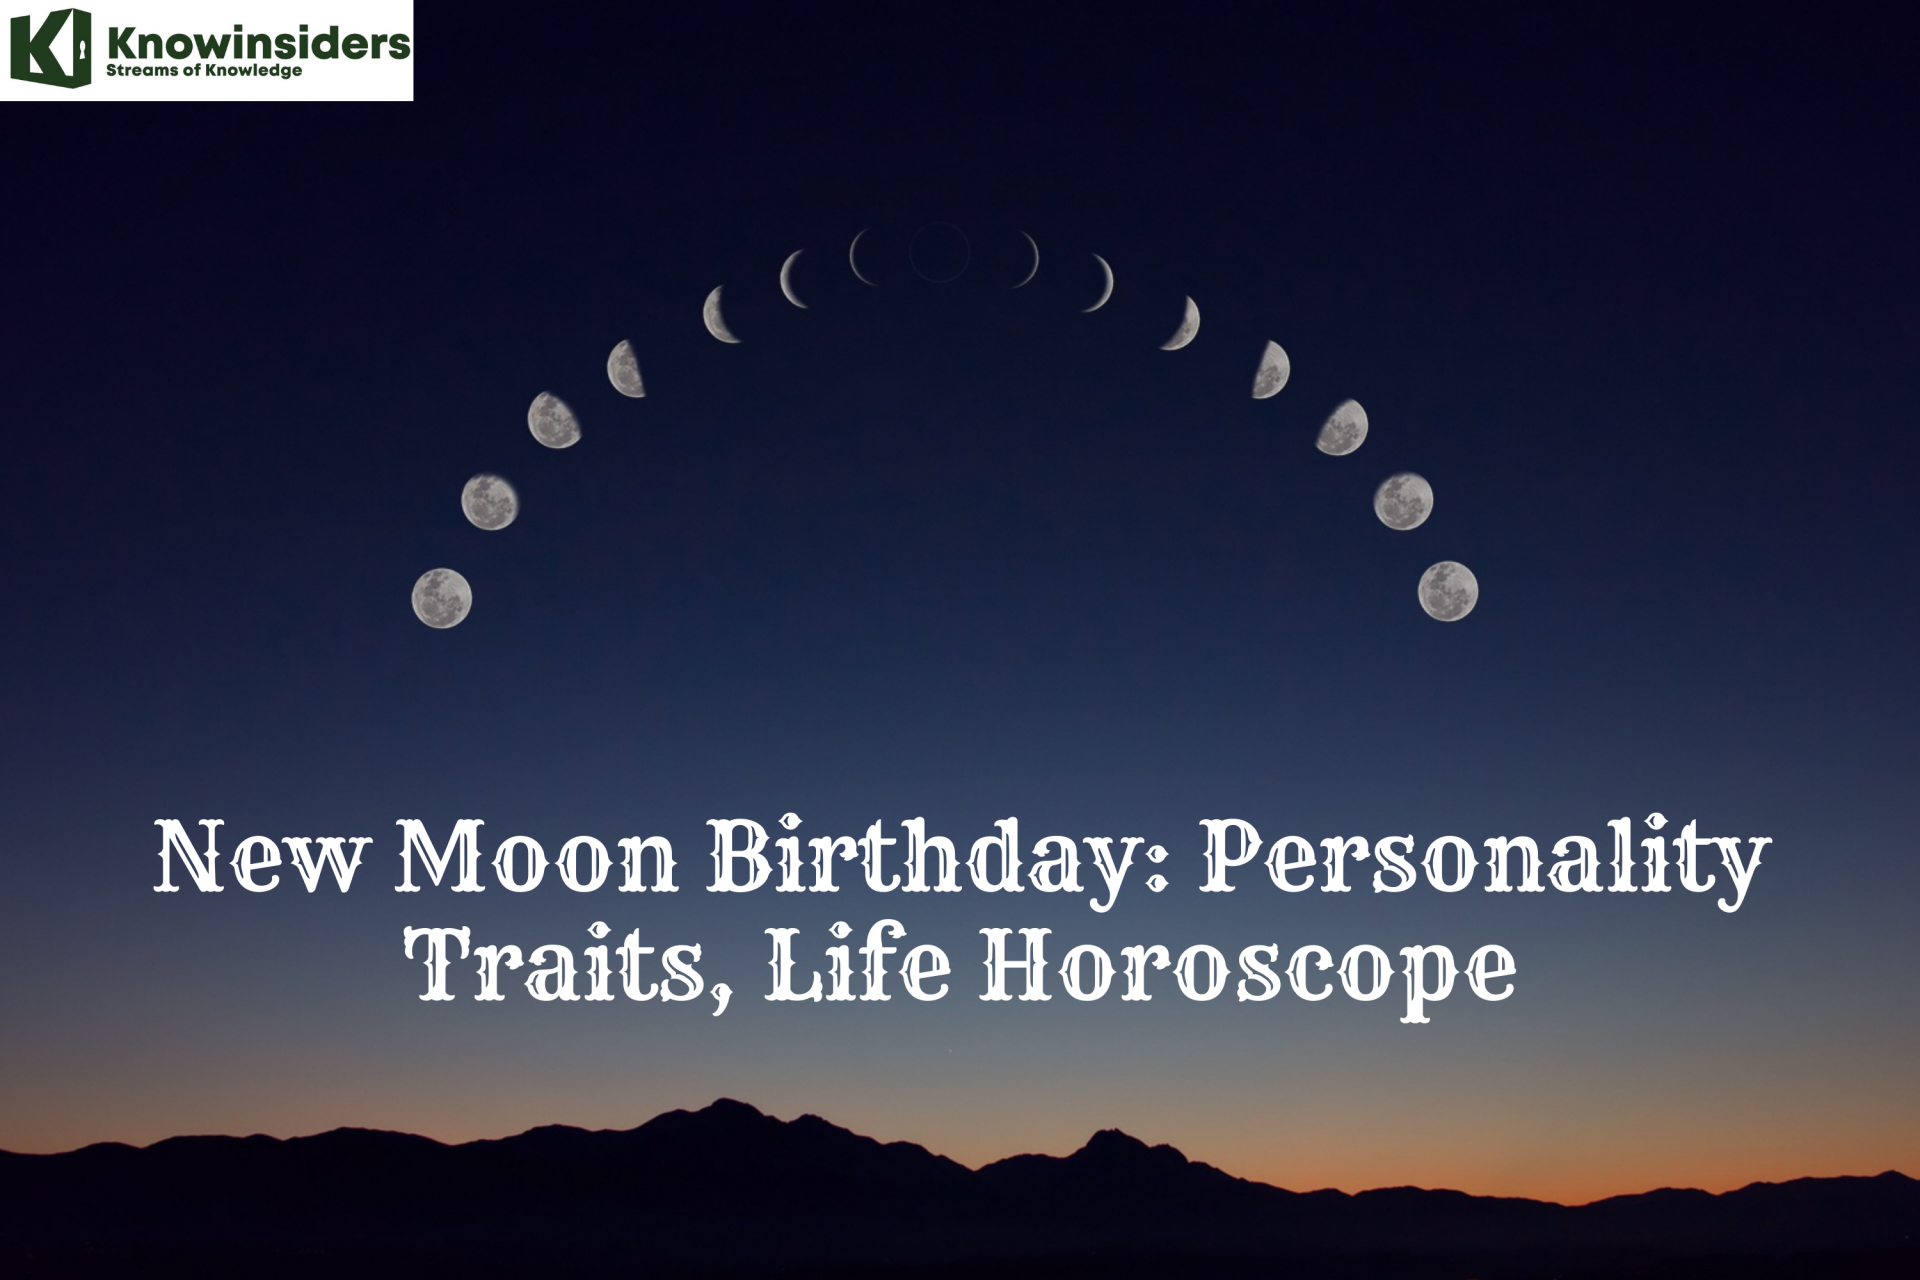 New Moon Birthday: Personality Traits, Life Horoscope